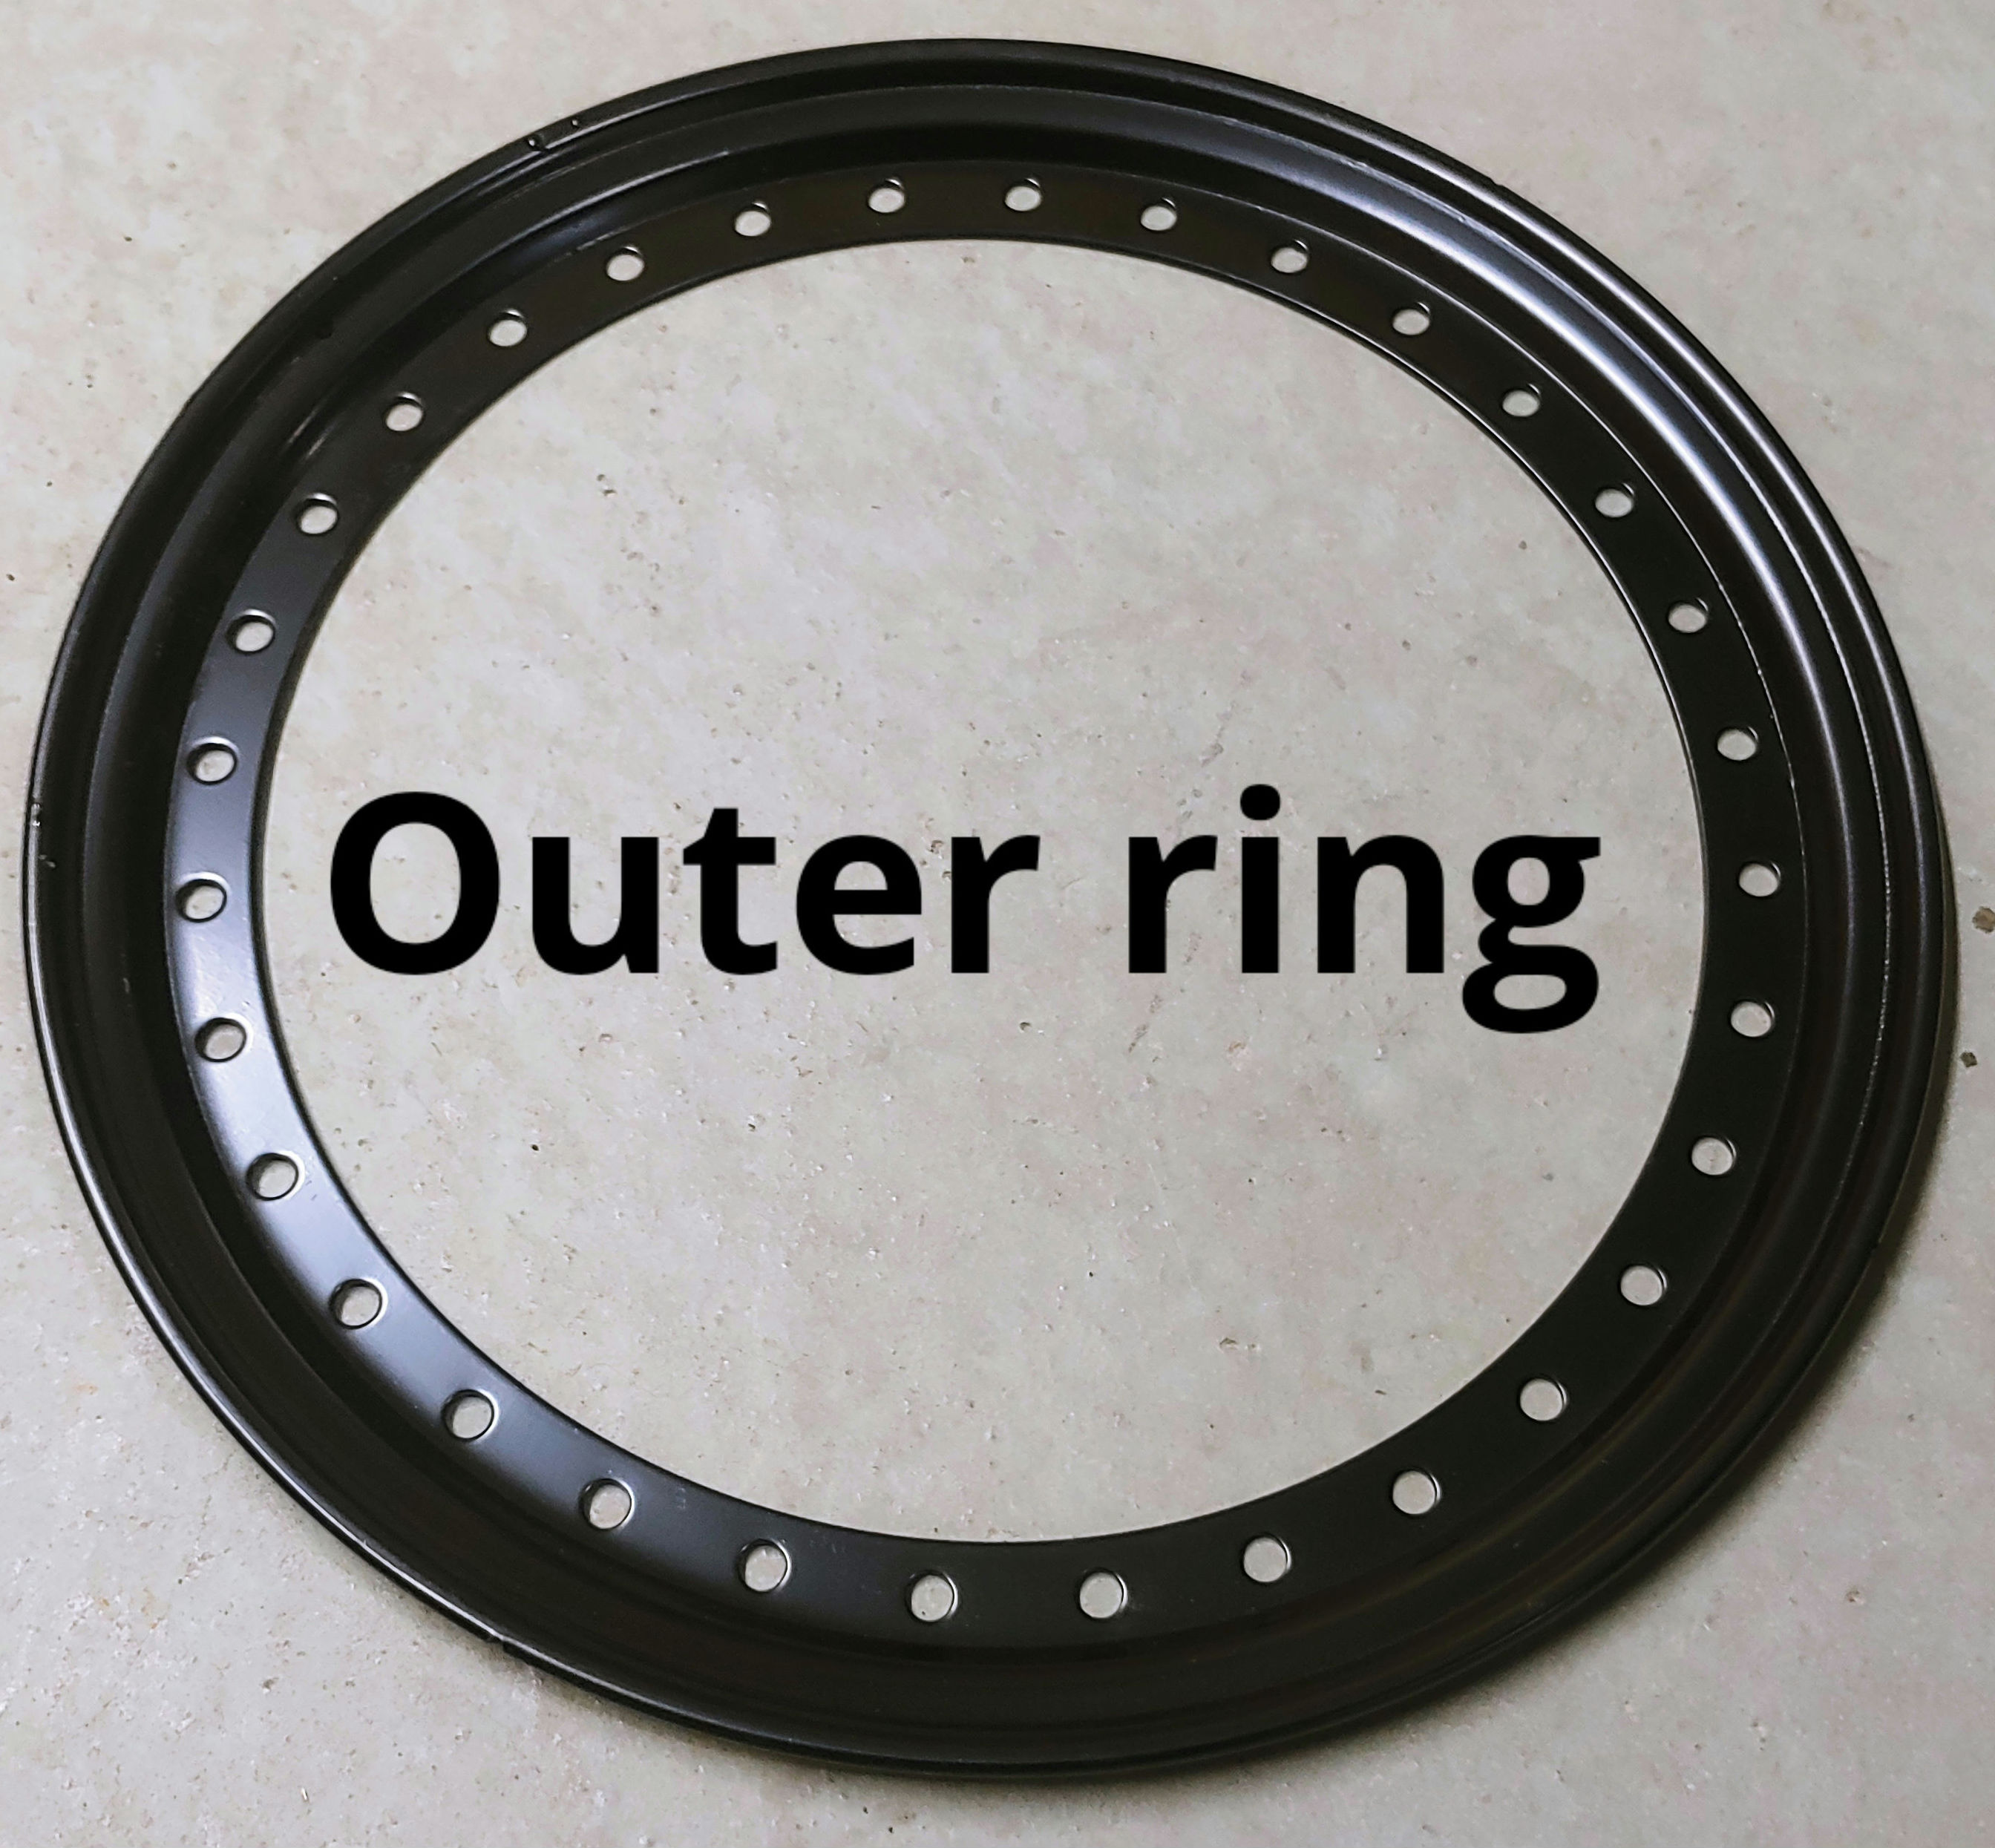 Outer ring.jpg